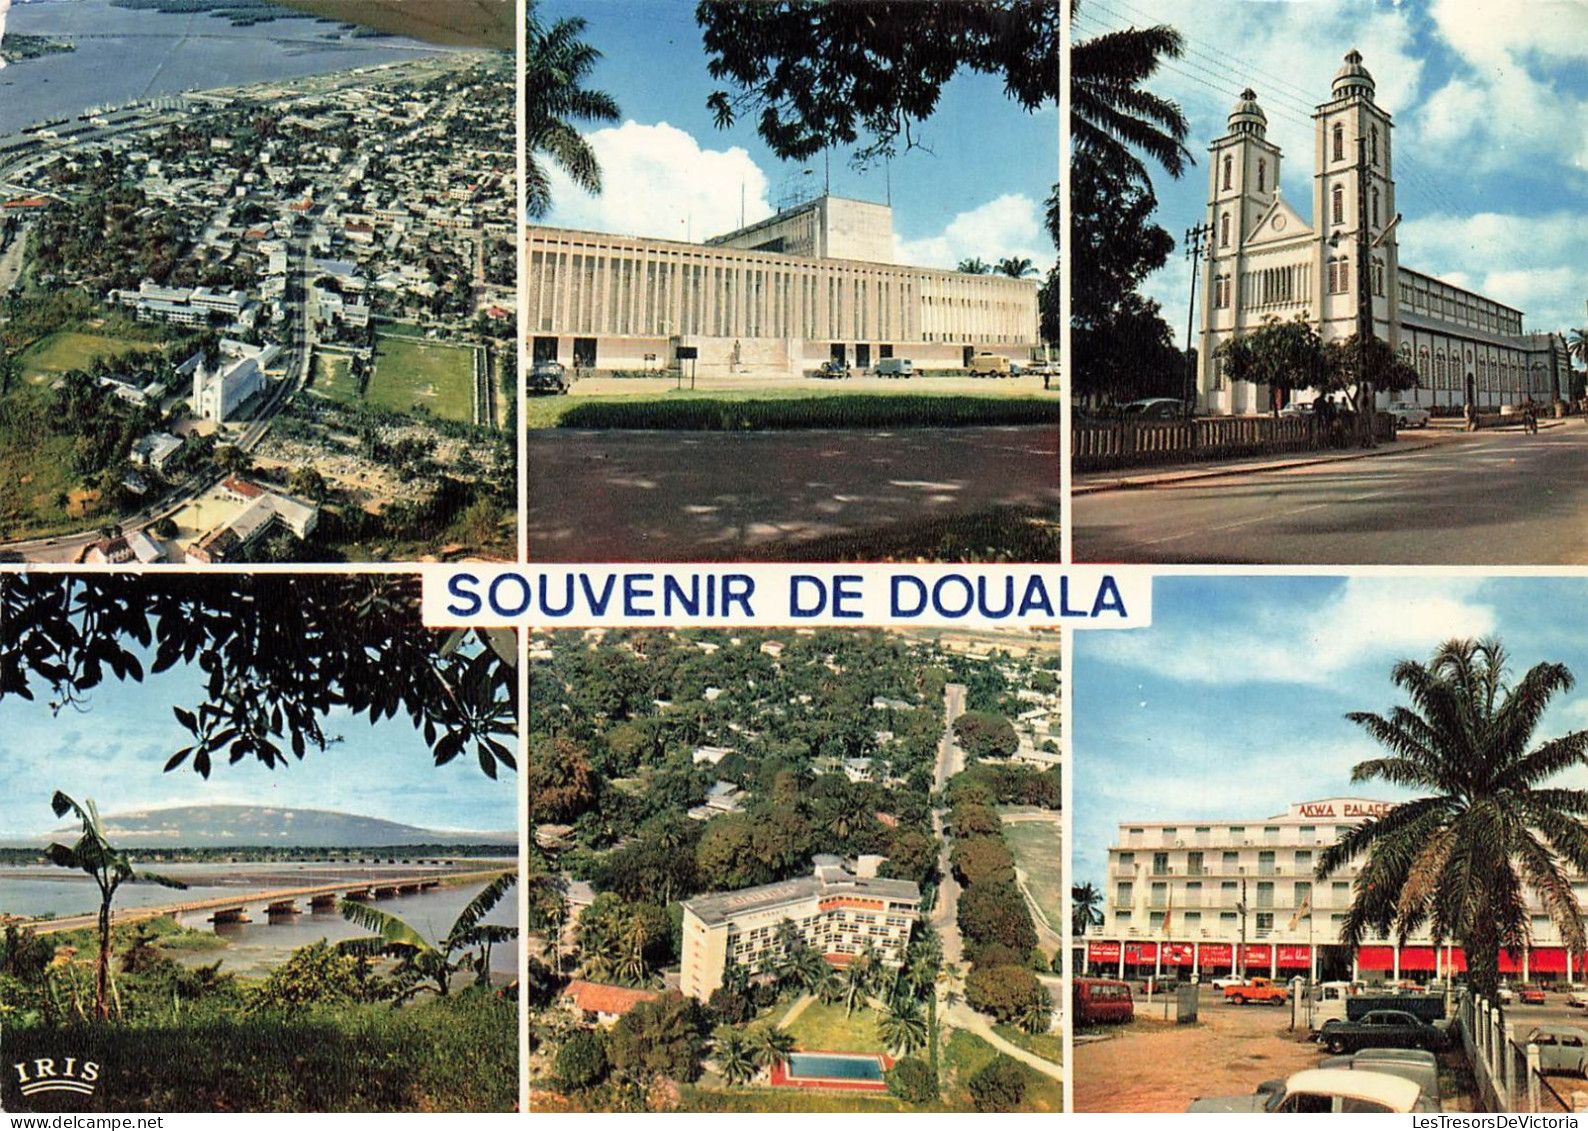 CAMEROUN - Douala - Vue Aérienne - La Poste - La Cathédrale - Mont-Cameroun - Akwa Palace - Carte Postale - Cameroun